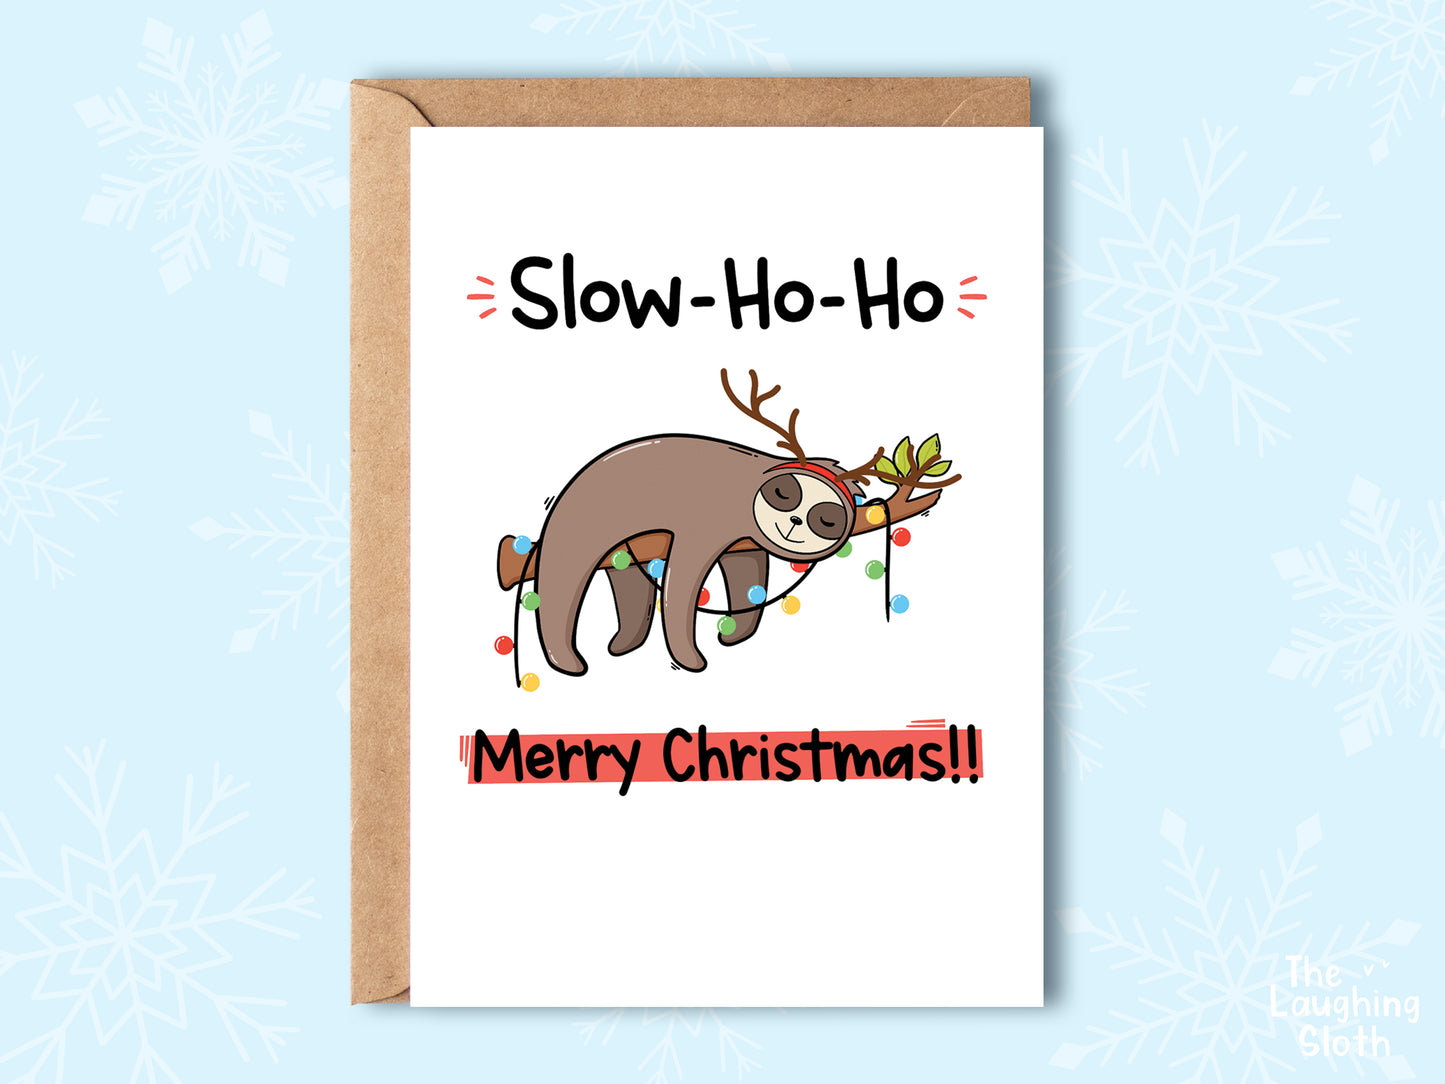 Sloth - Slow-ho-ho!